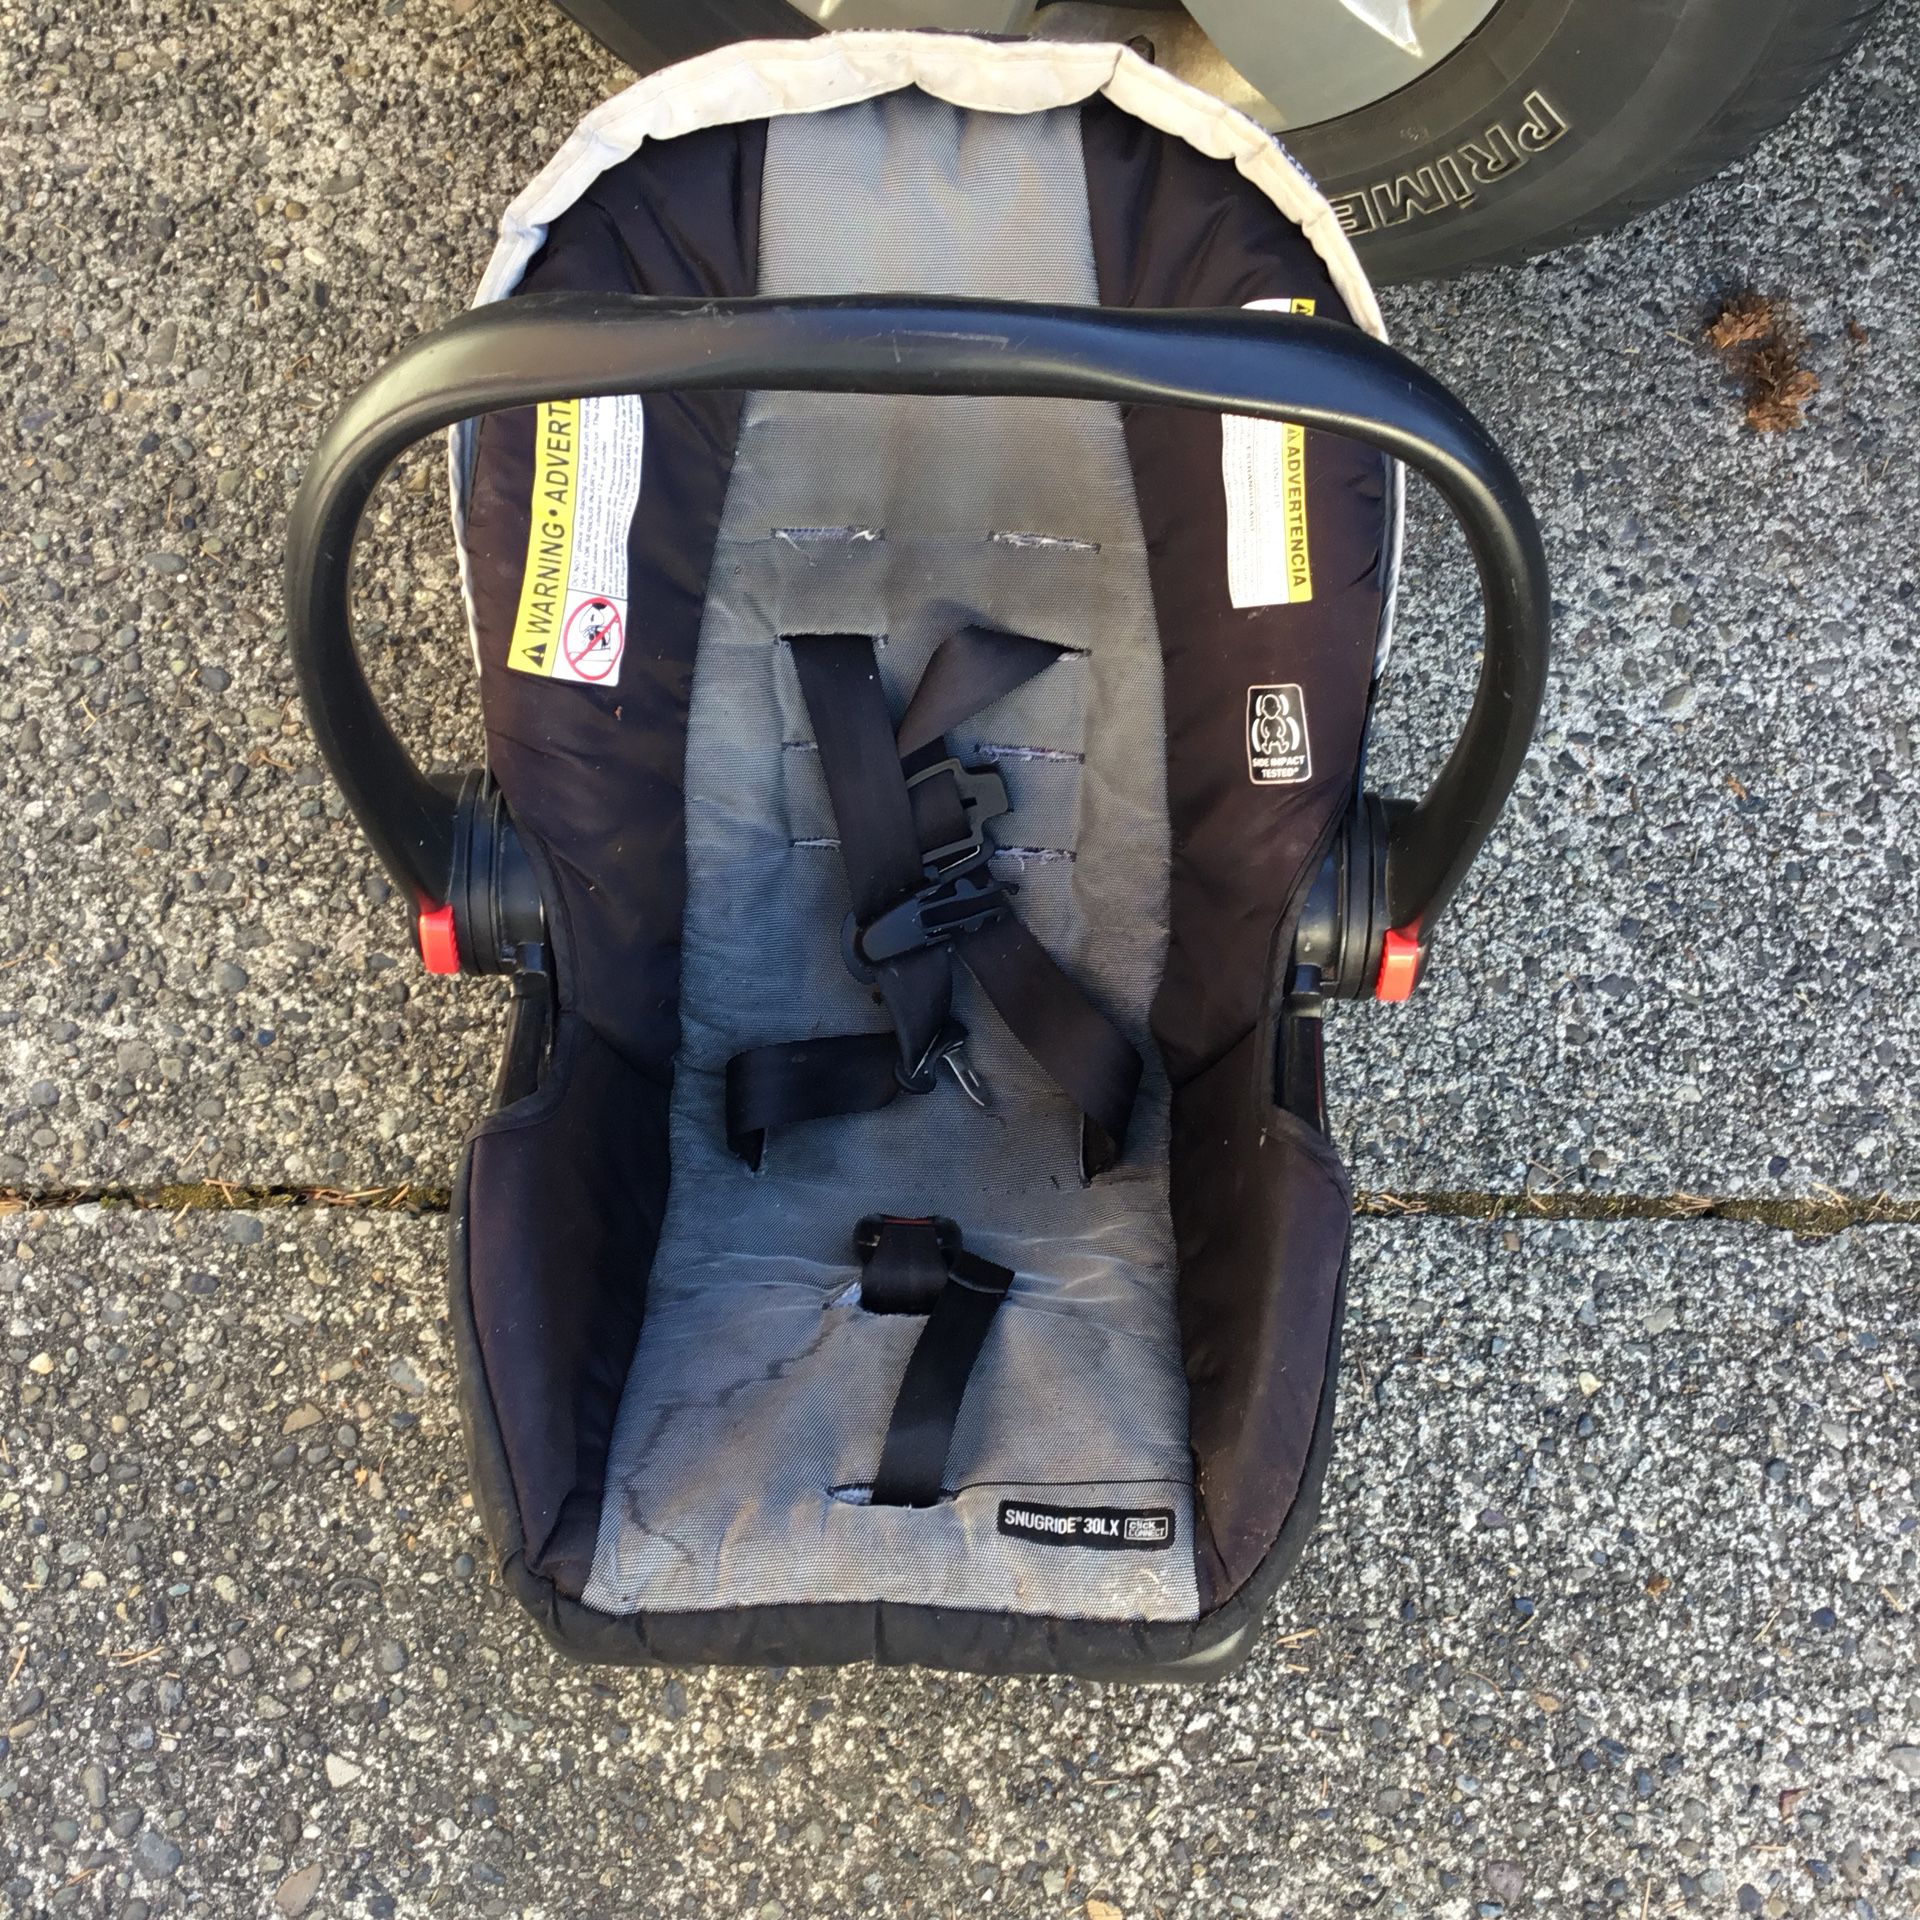 Baby car seat $20